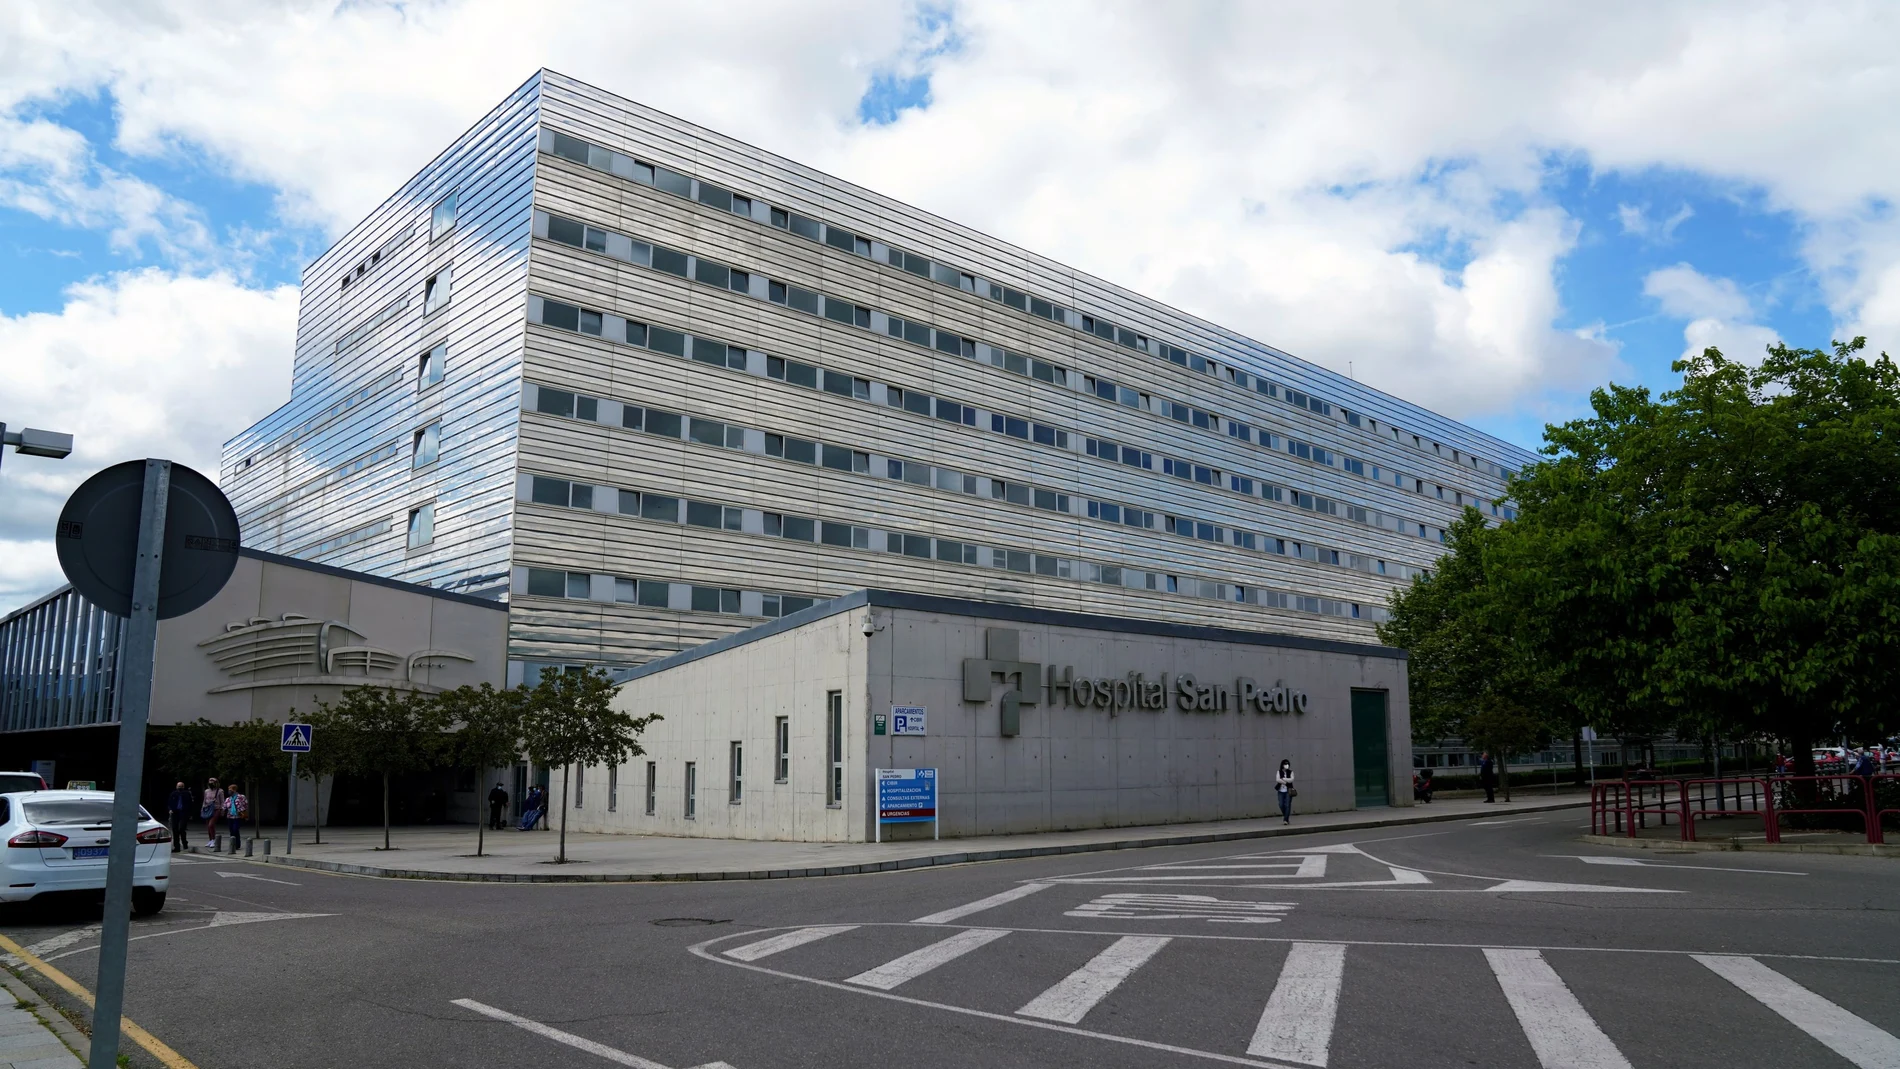 Hospital de San Pedro, en Logroño, donde está ingresado desde hace más de un mes el líder del Frente Polisario Brahim Ghali